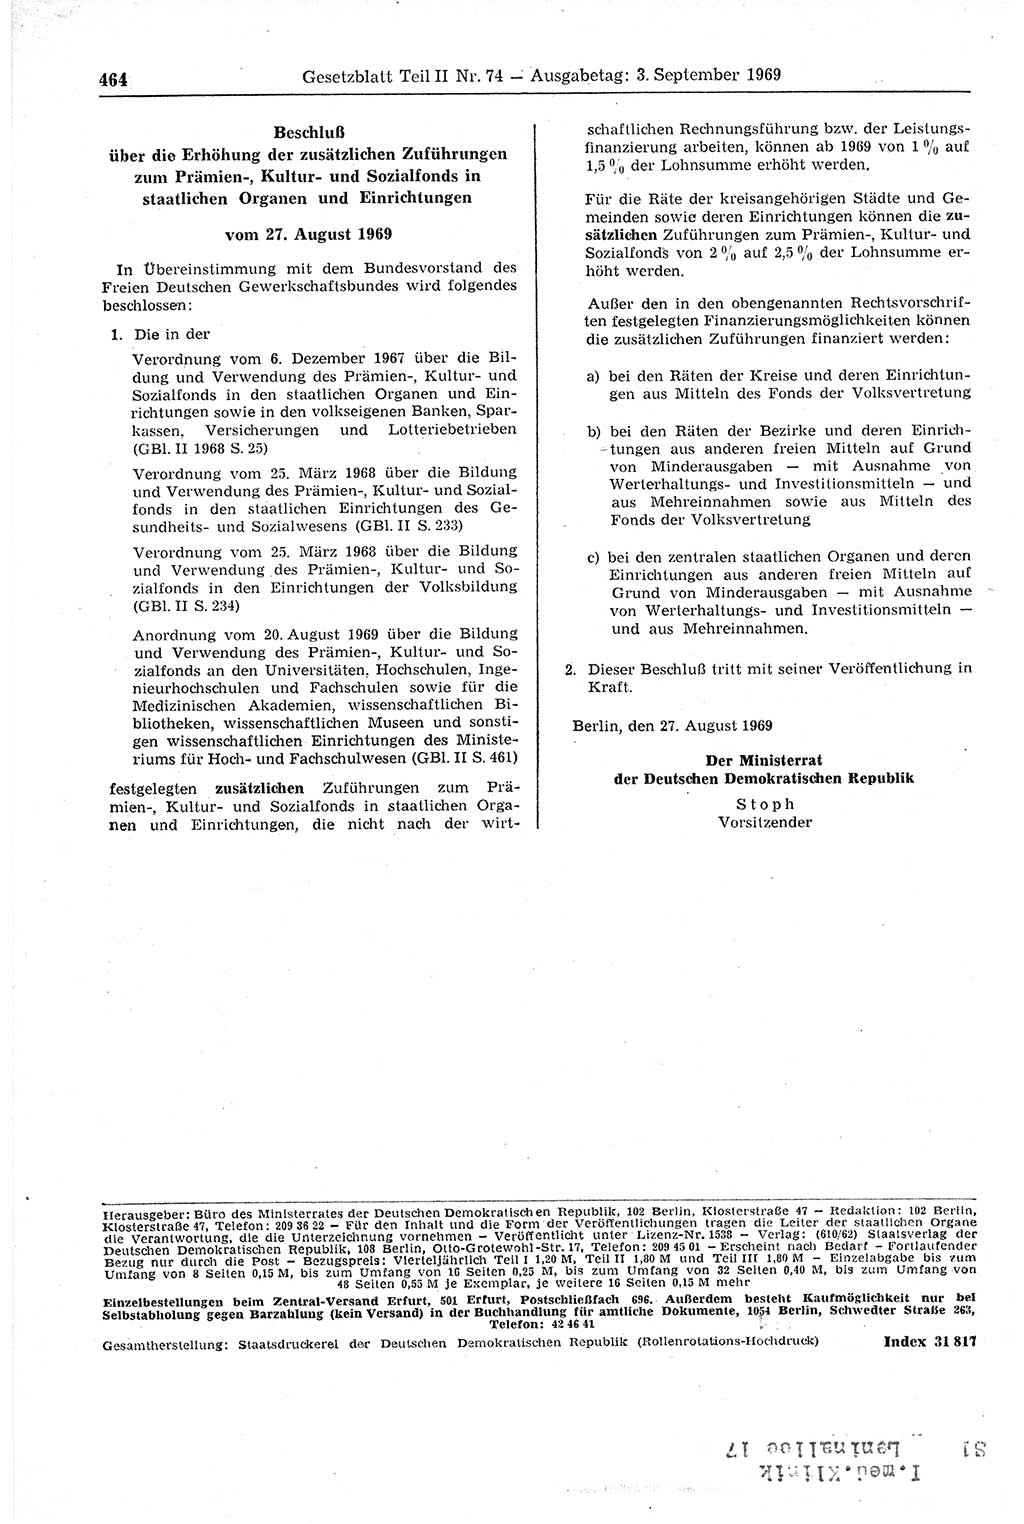 Gesetzblatt (GBl.) der Deutschen Demokratischen Republik (DDR) Teil ⅠⅠ 1969, Seite 464 (GBl. DDR ⅠⅠ 1969, S. 464)